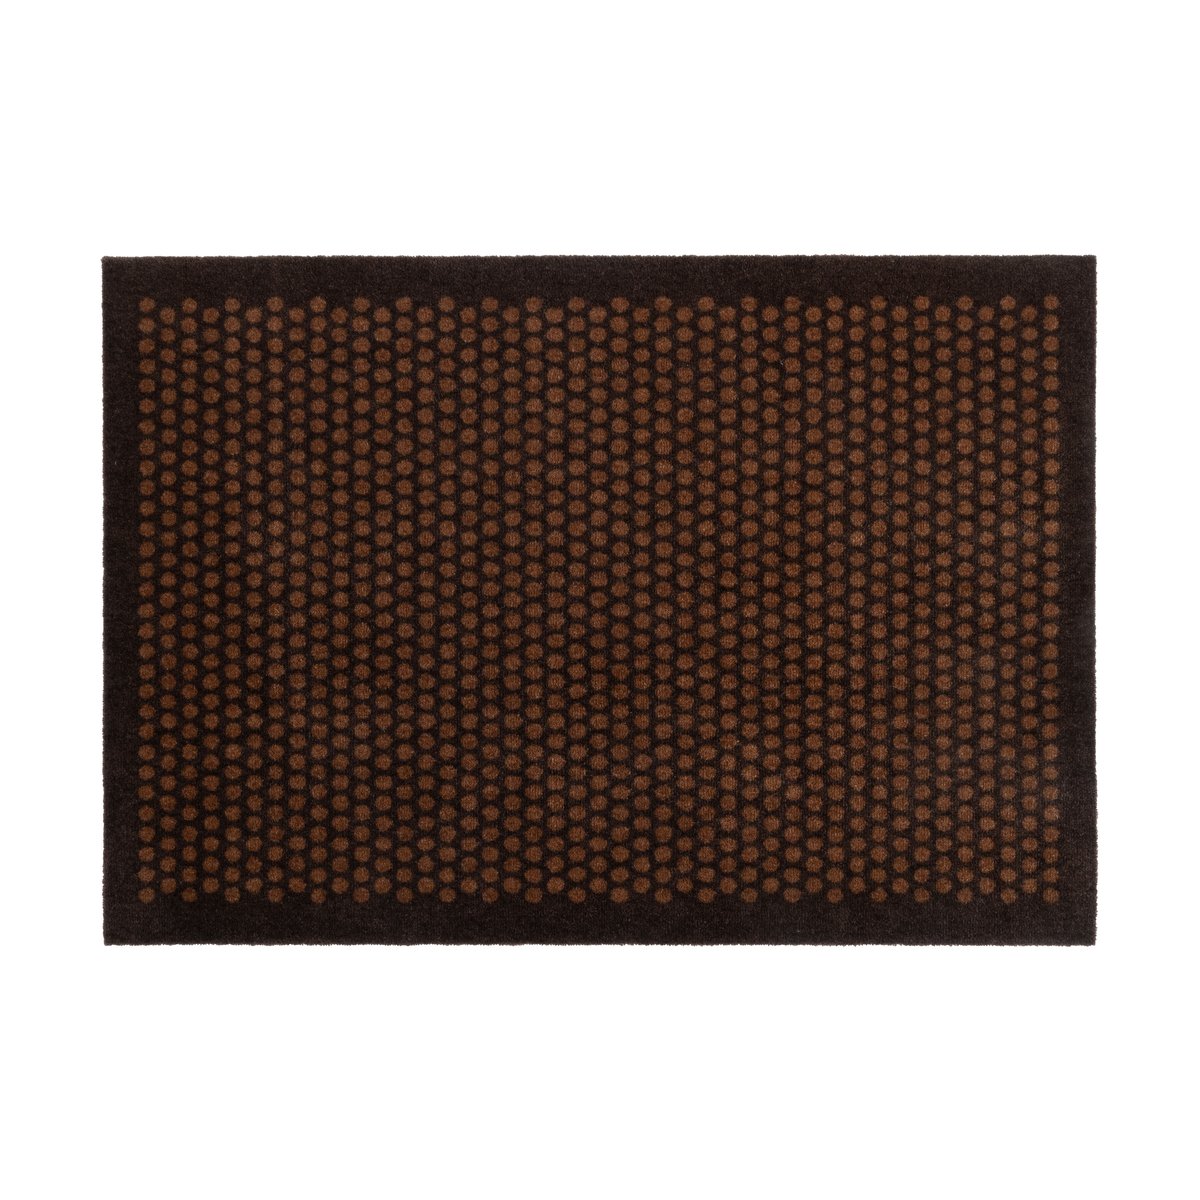 tica copenhagen Dot gangmat Cognac-brown, 90x130 cm